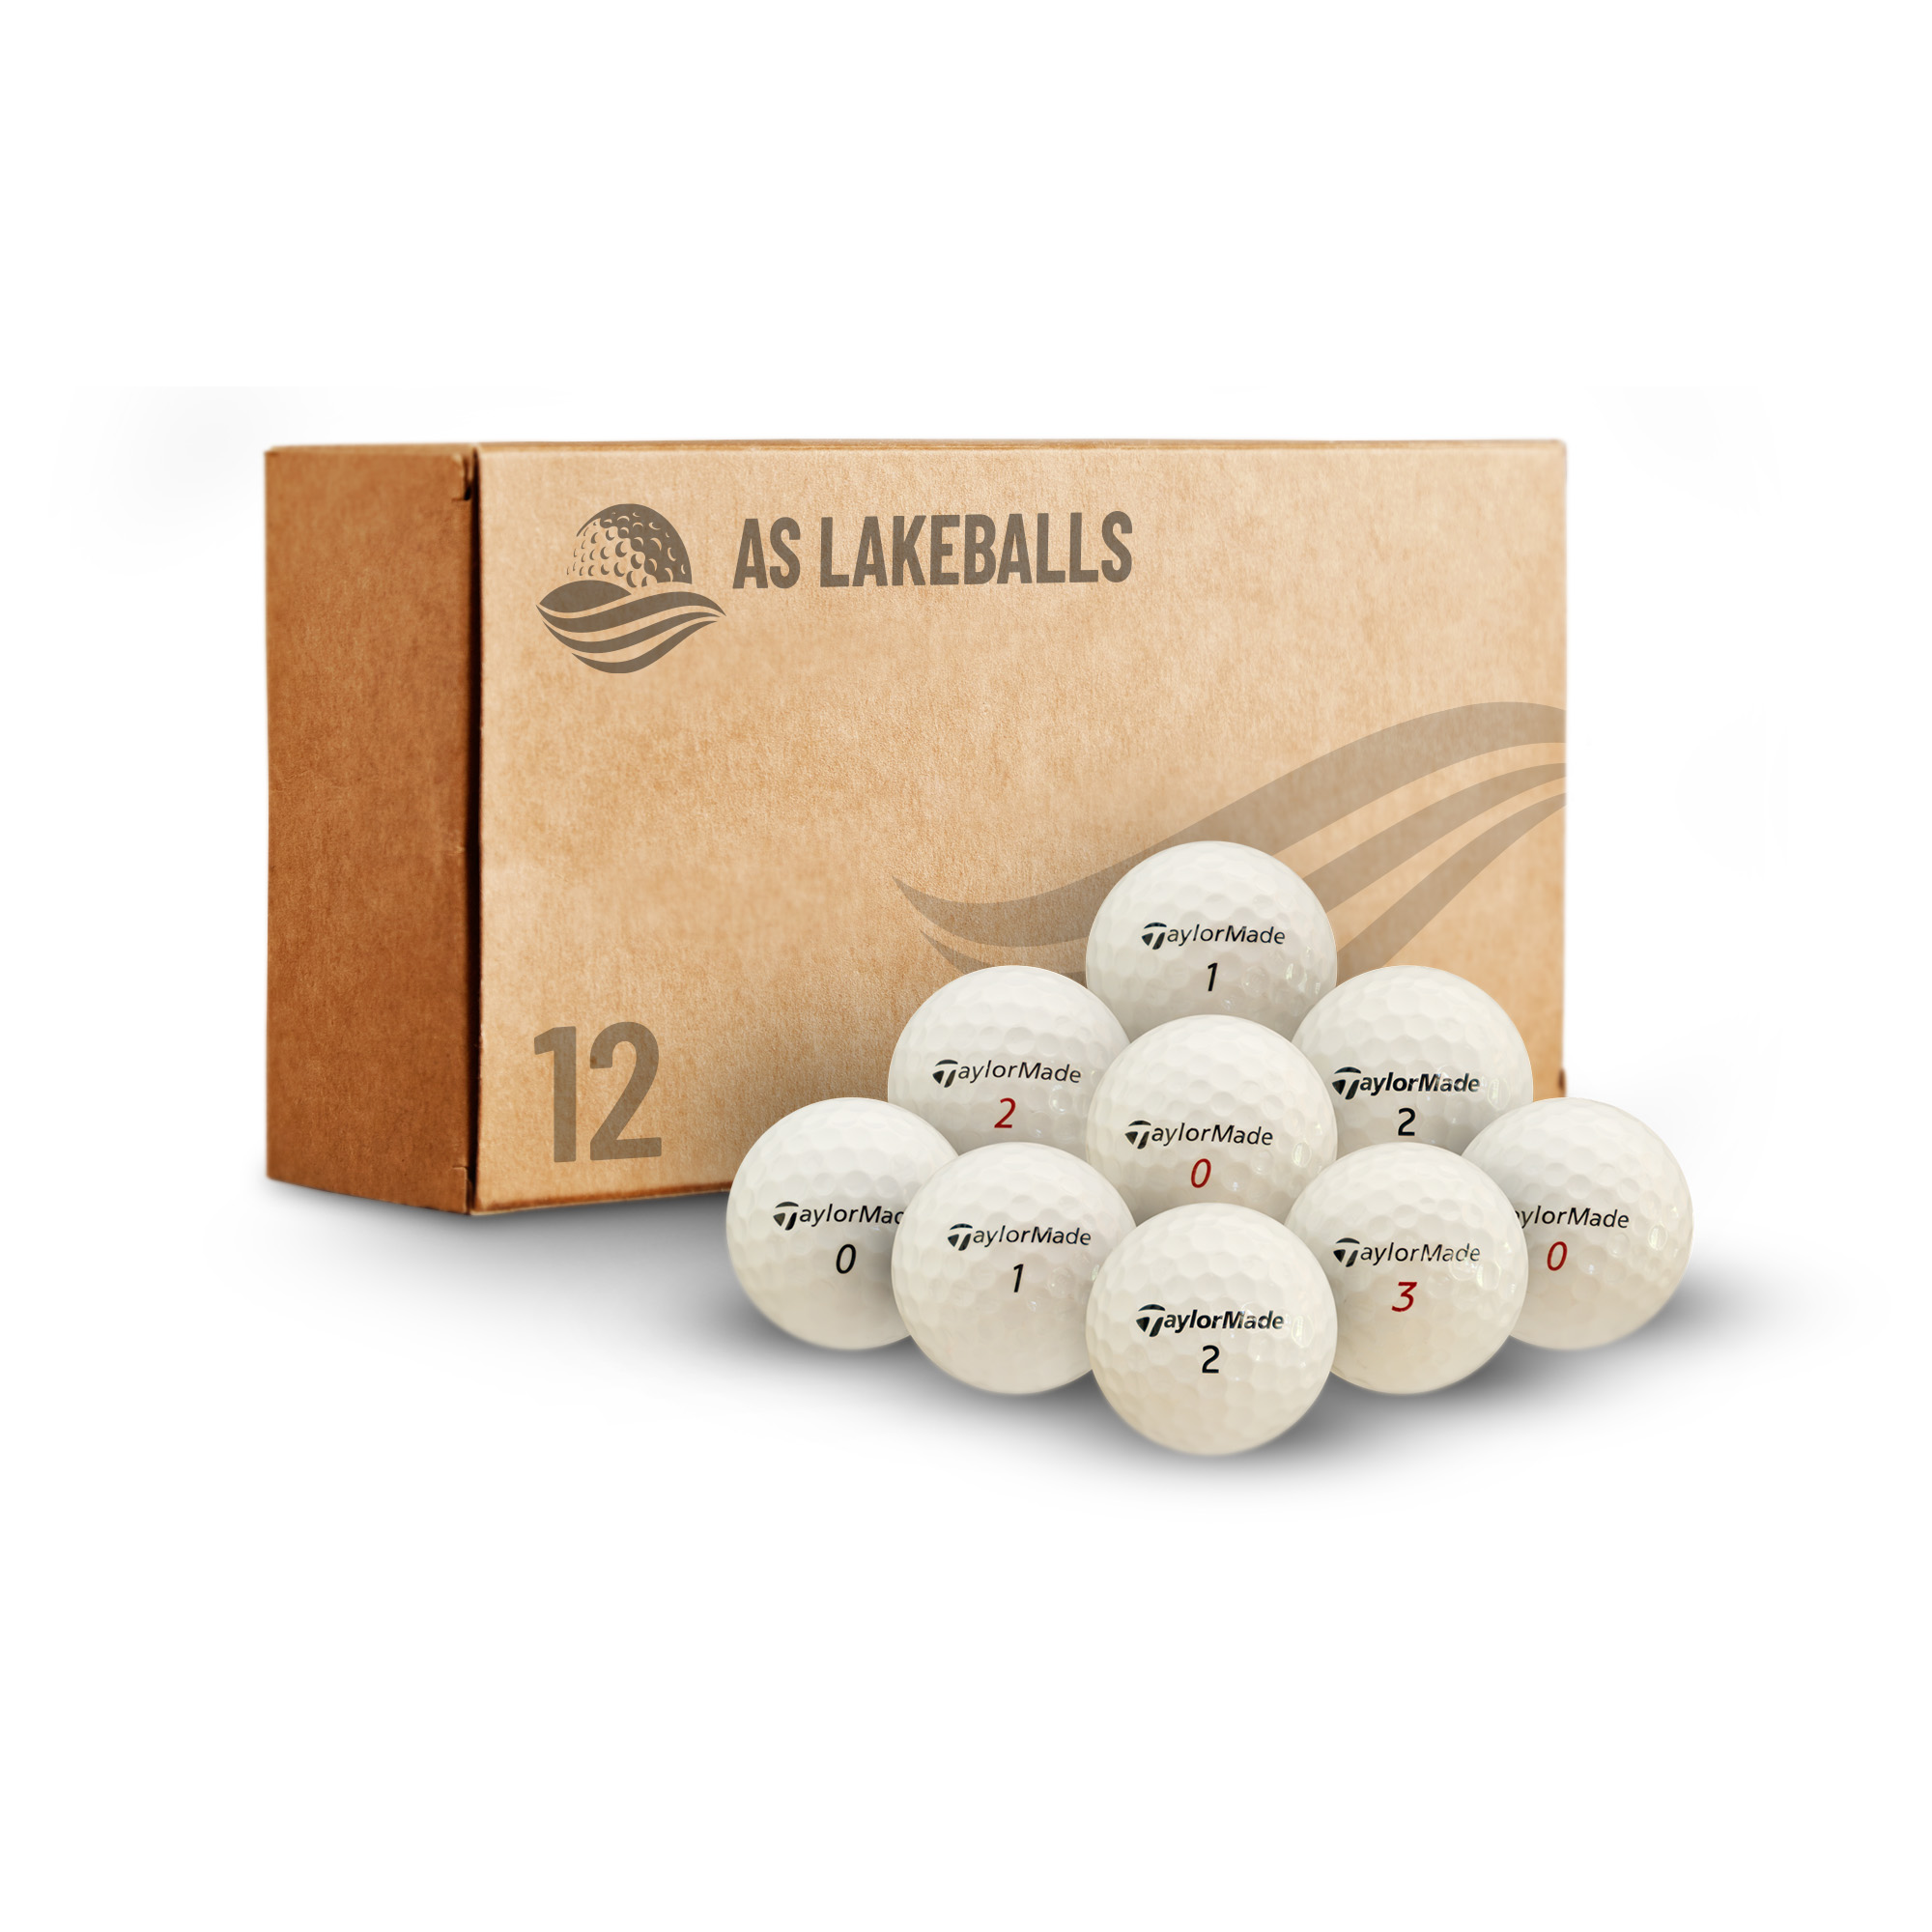 12 Stück Taylor Made Mix AA-AAA Lakeballs bei AS Lakeballs günstig kaufen